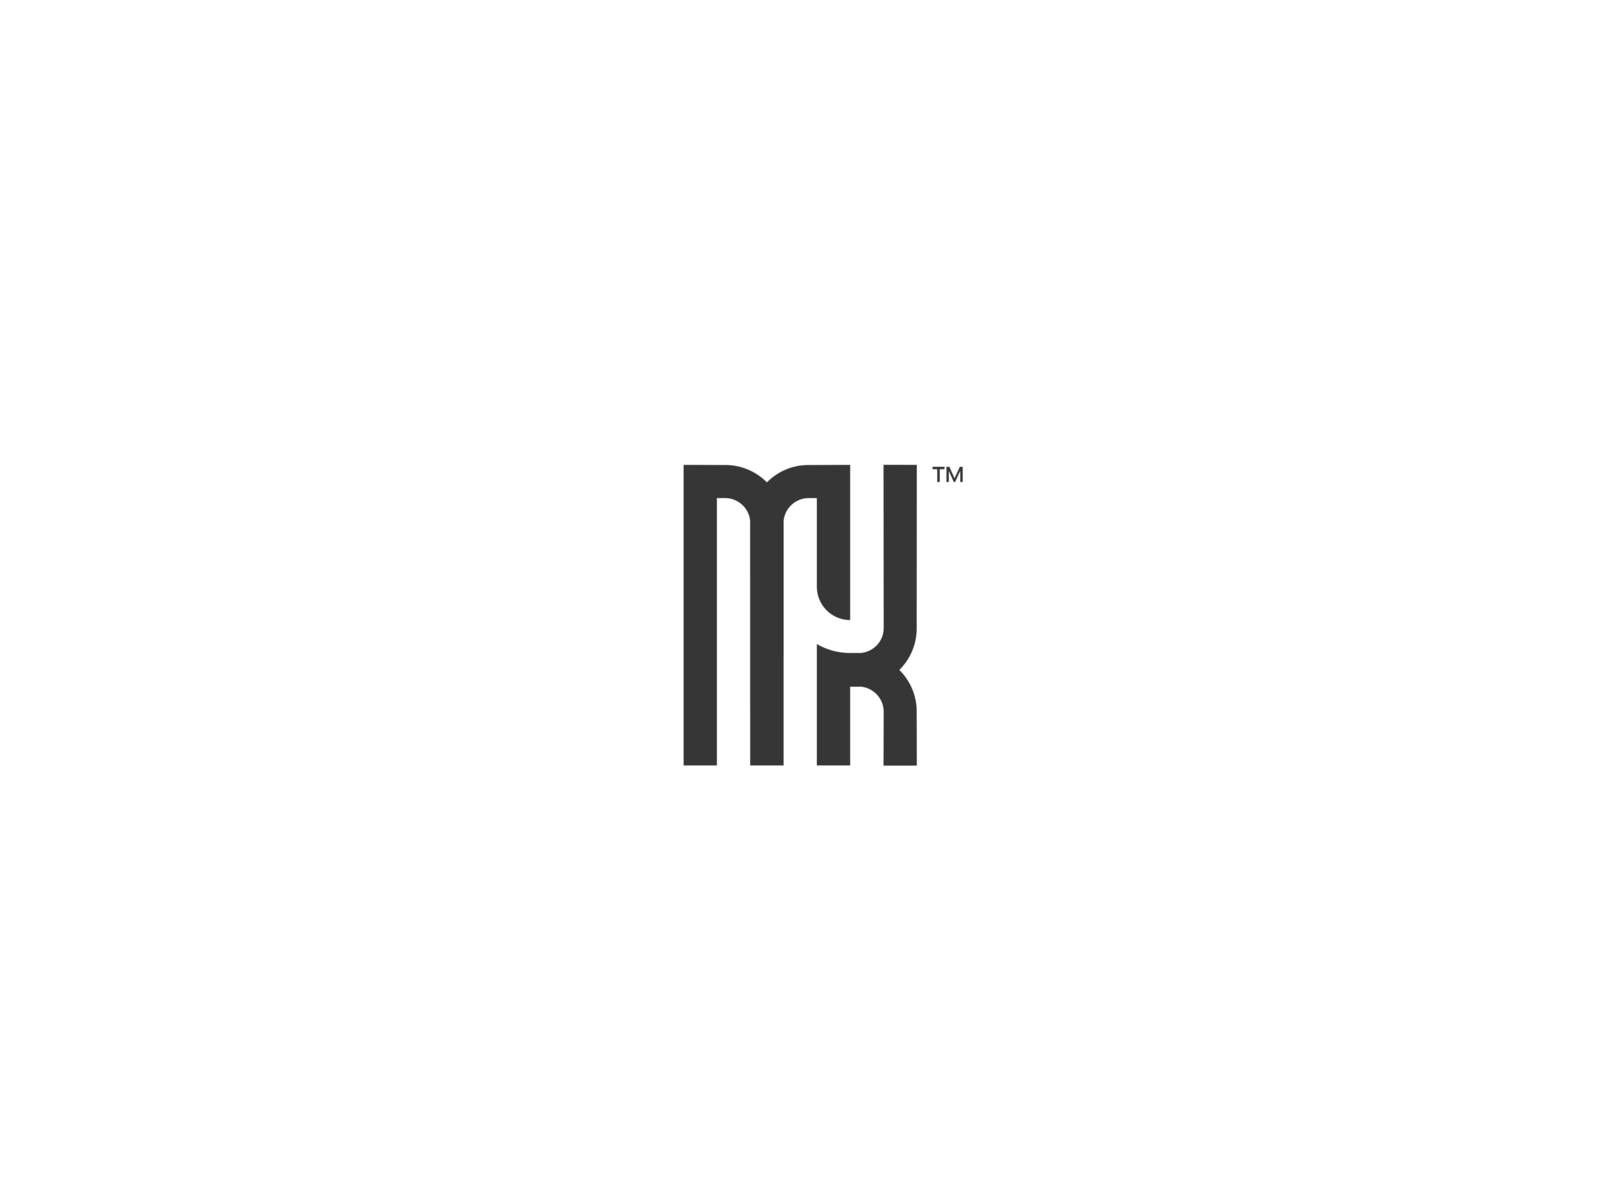 MK monogram by hooman khaj on Dribbble